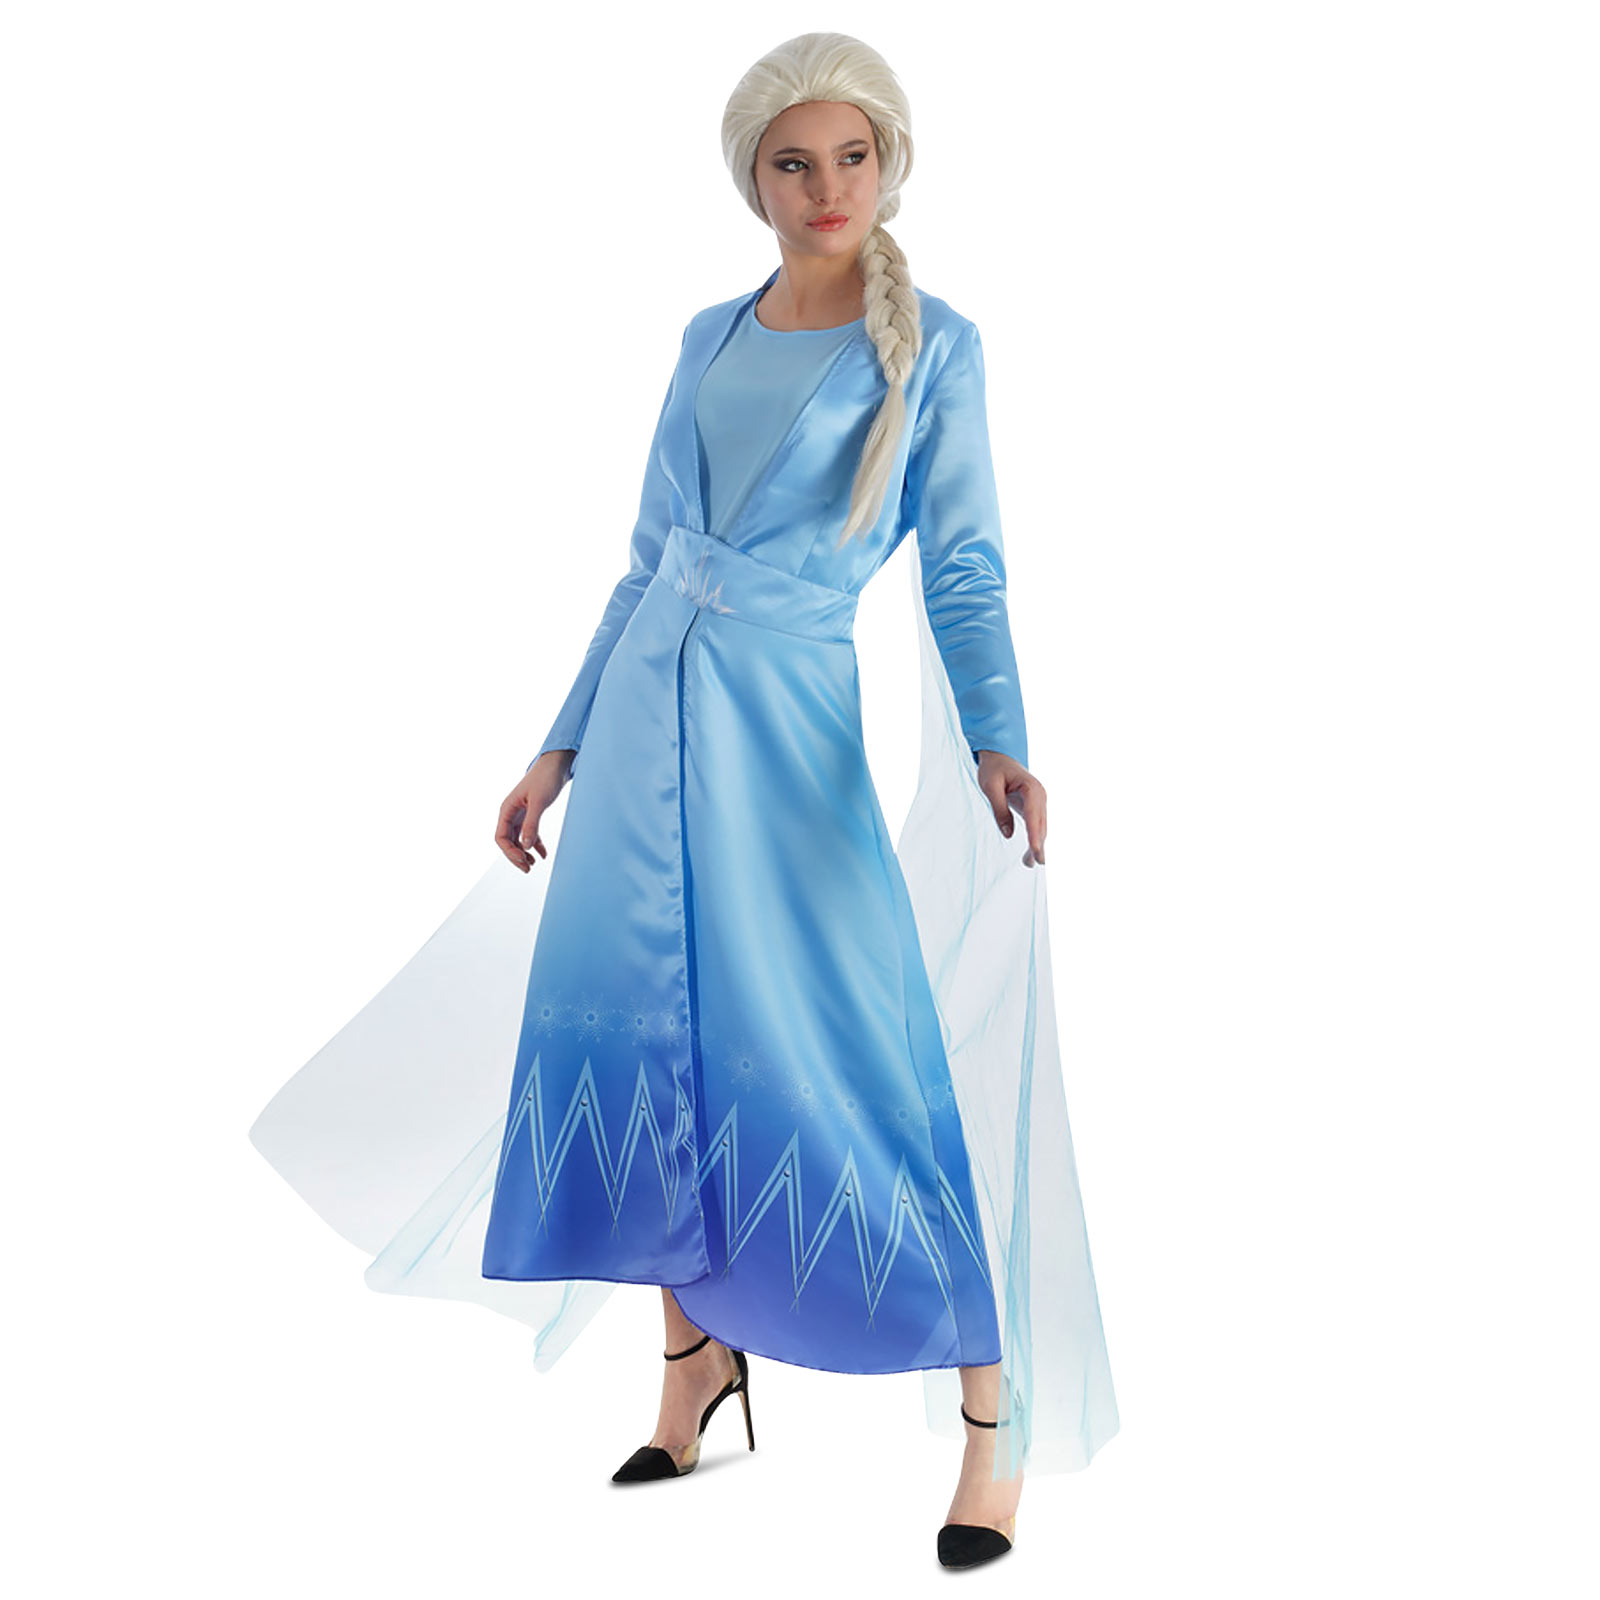 Elsa Ice Queen Costume Dress for Frozen Fans